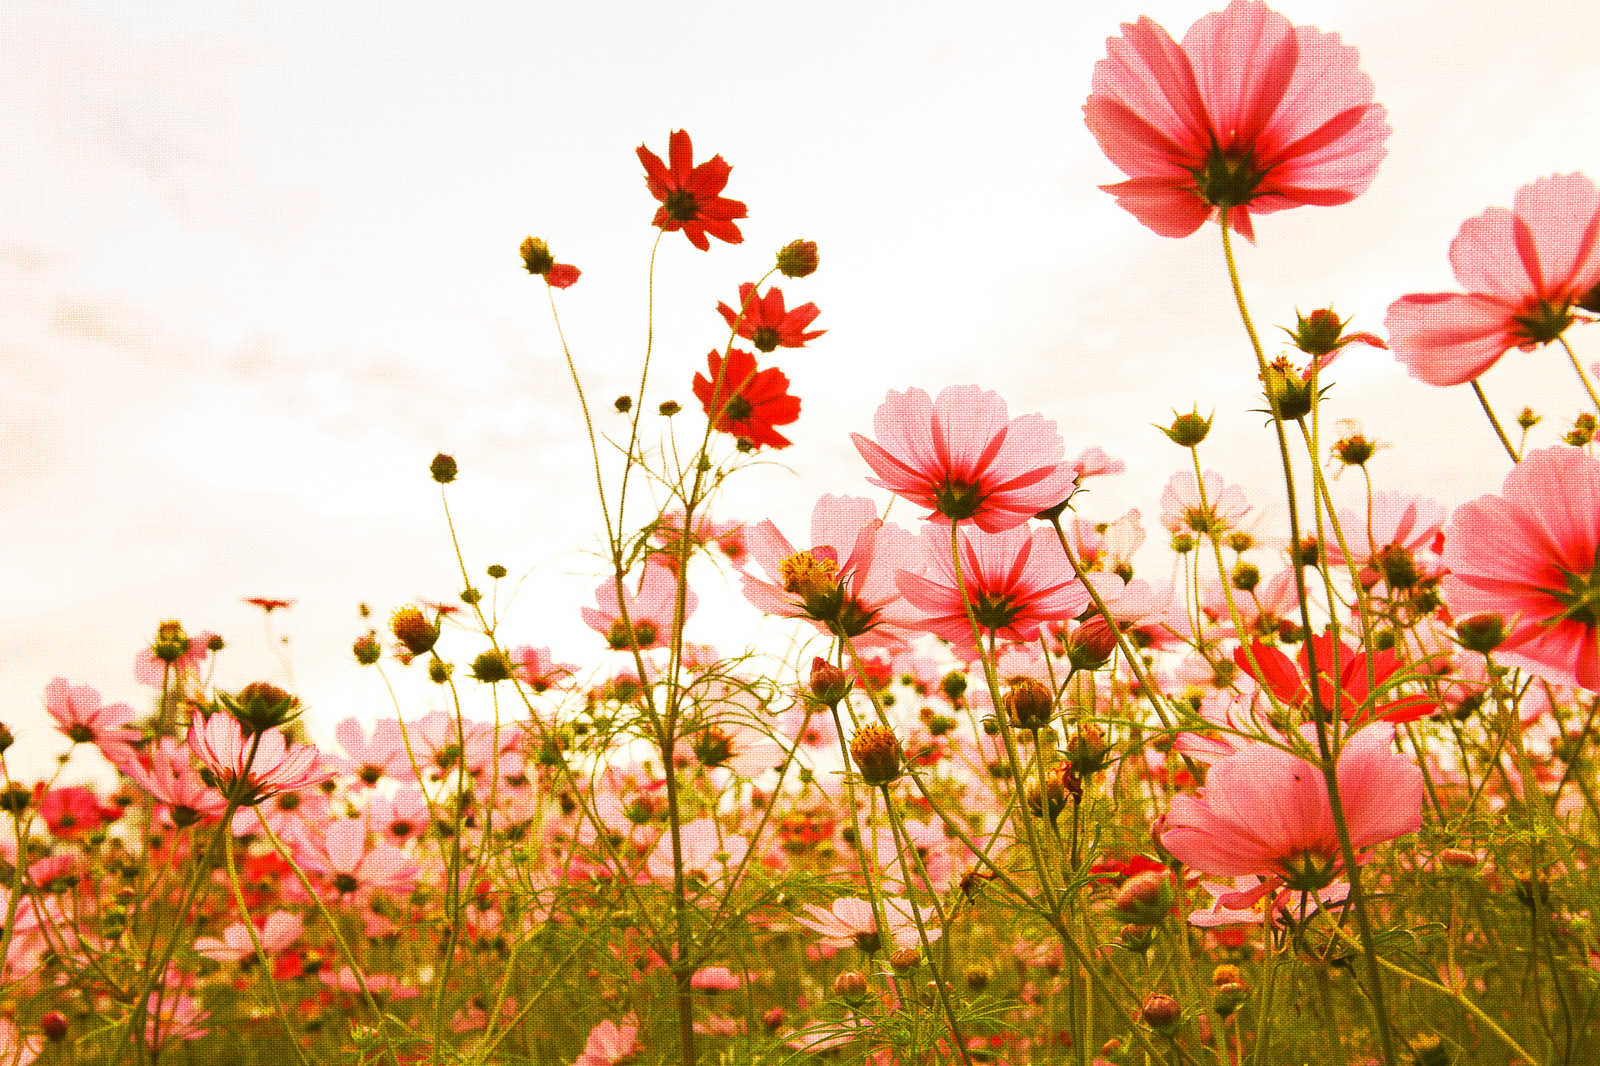             Lienzo con prado de flores en primavera | rosa, verde, blanco - 0,90 m x 0,60 m
        